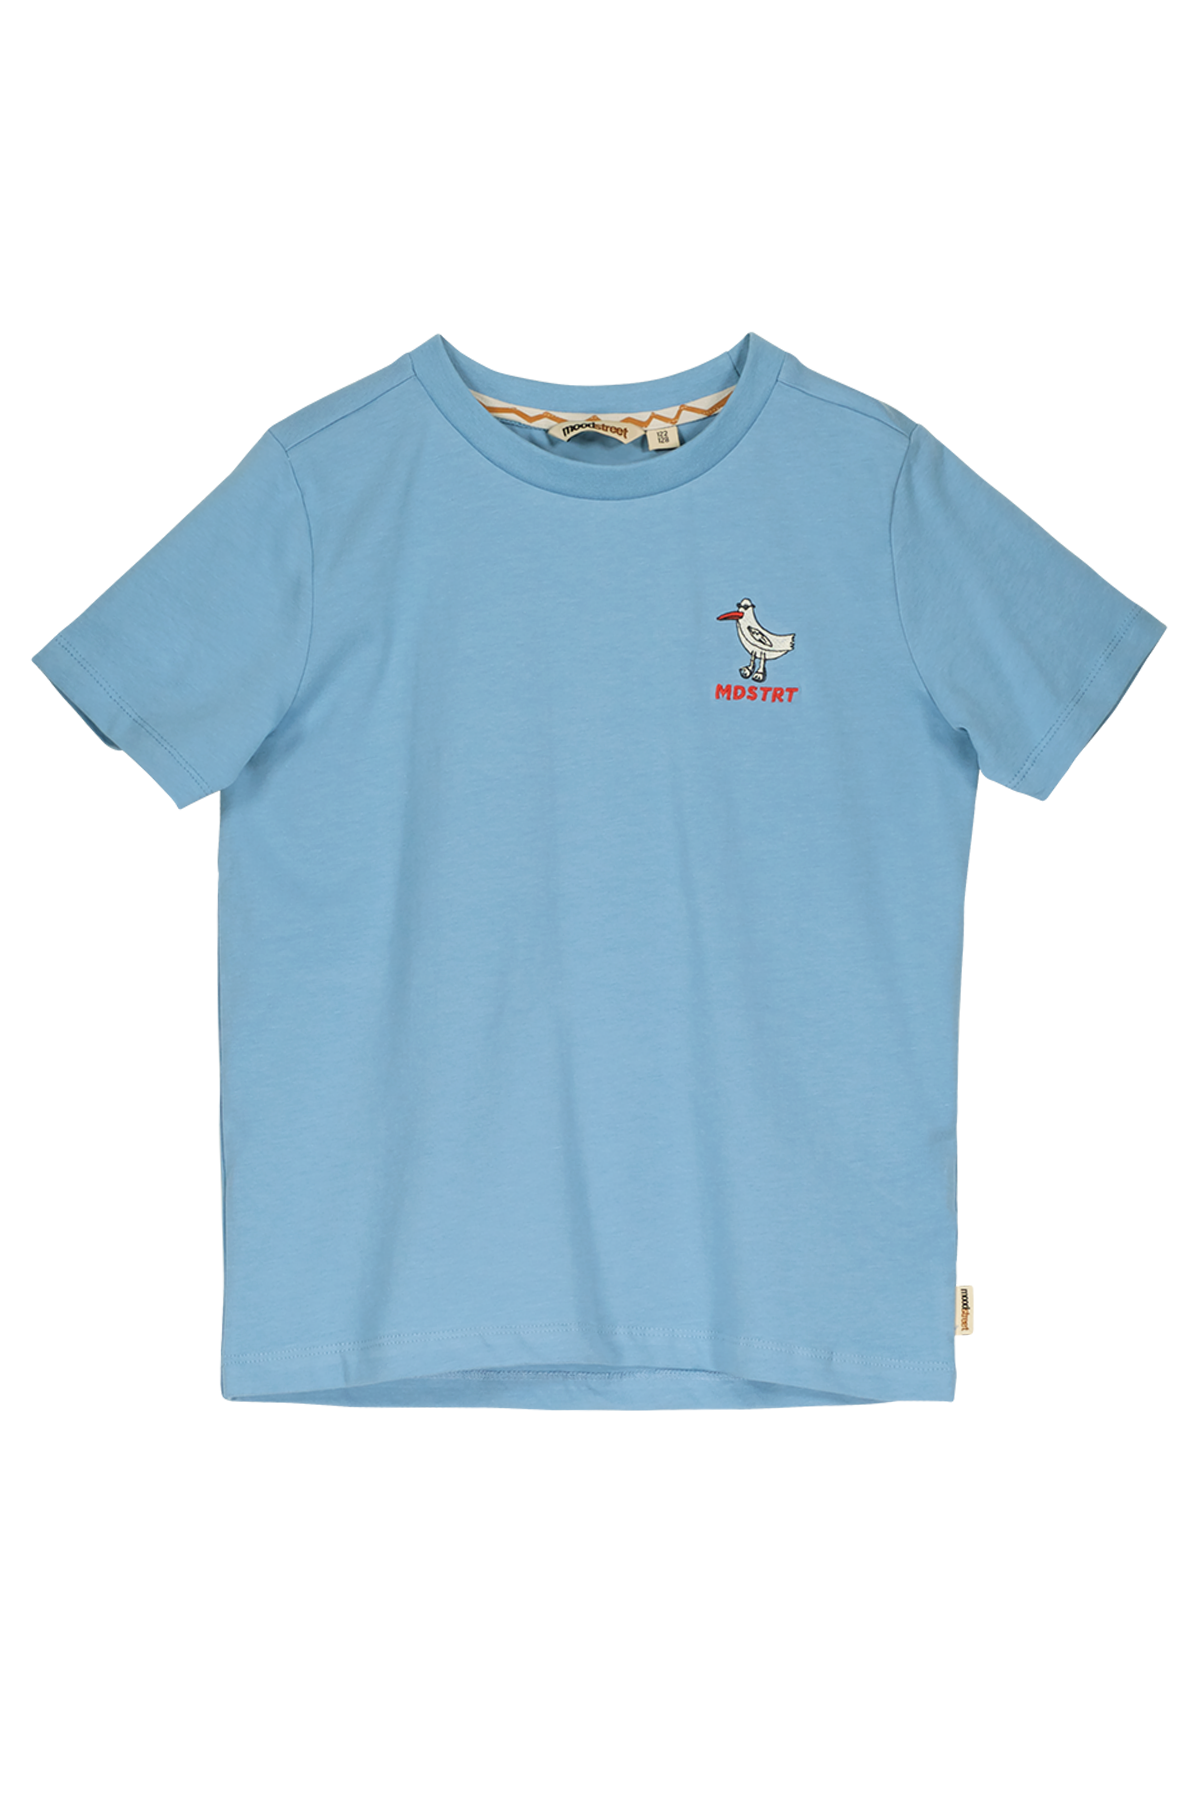 T-Shirt Boys t-shirt ligth blue